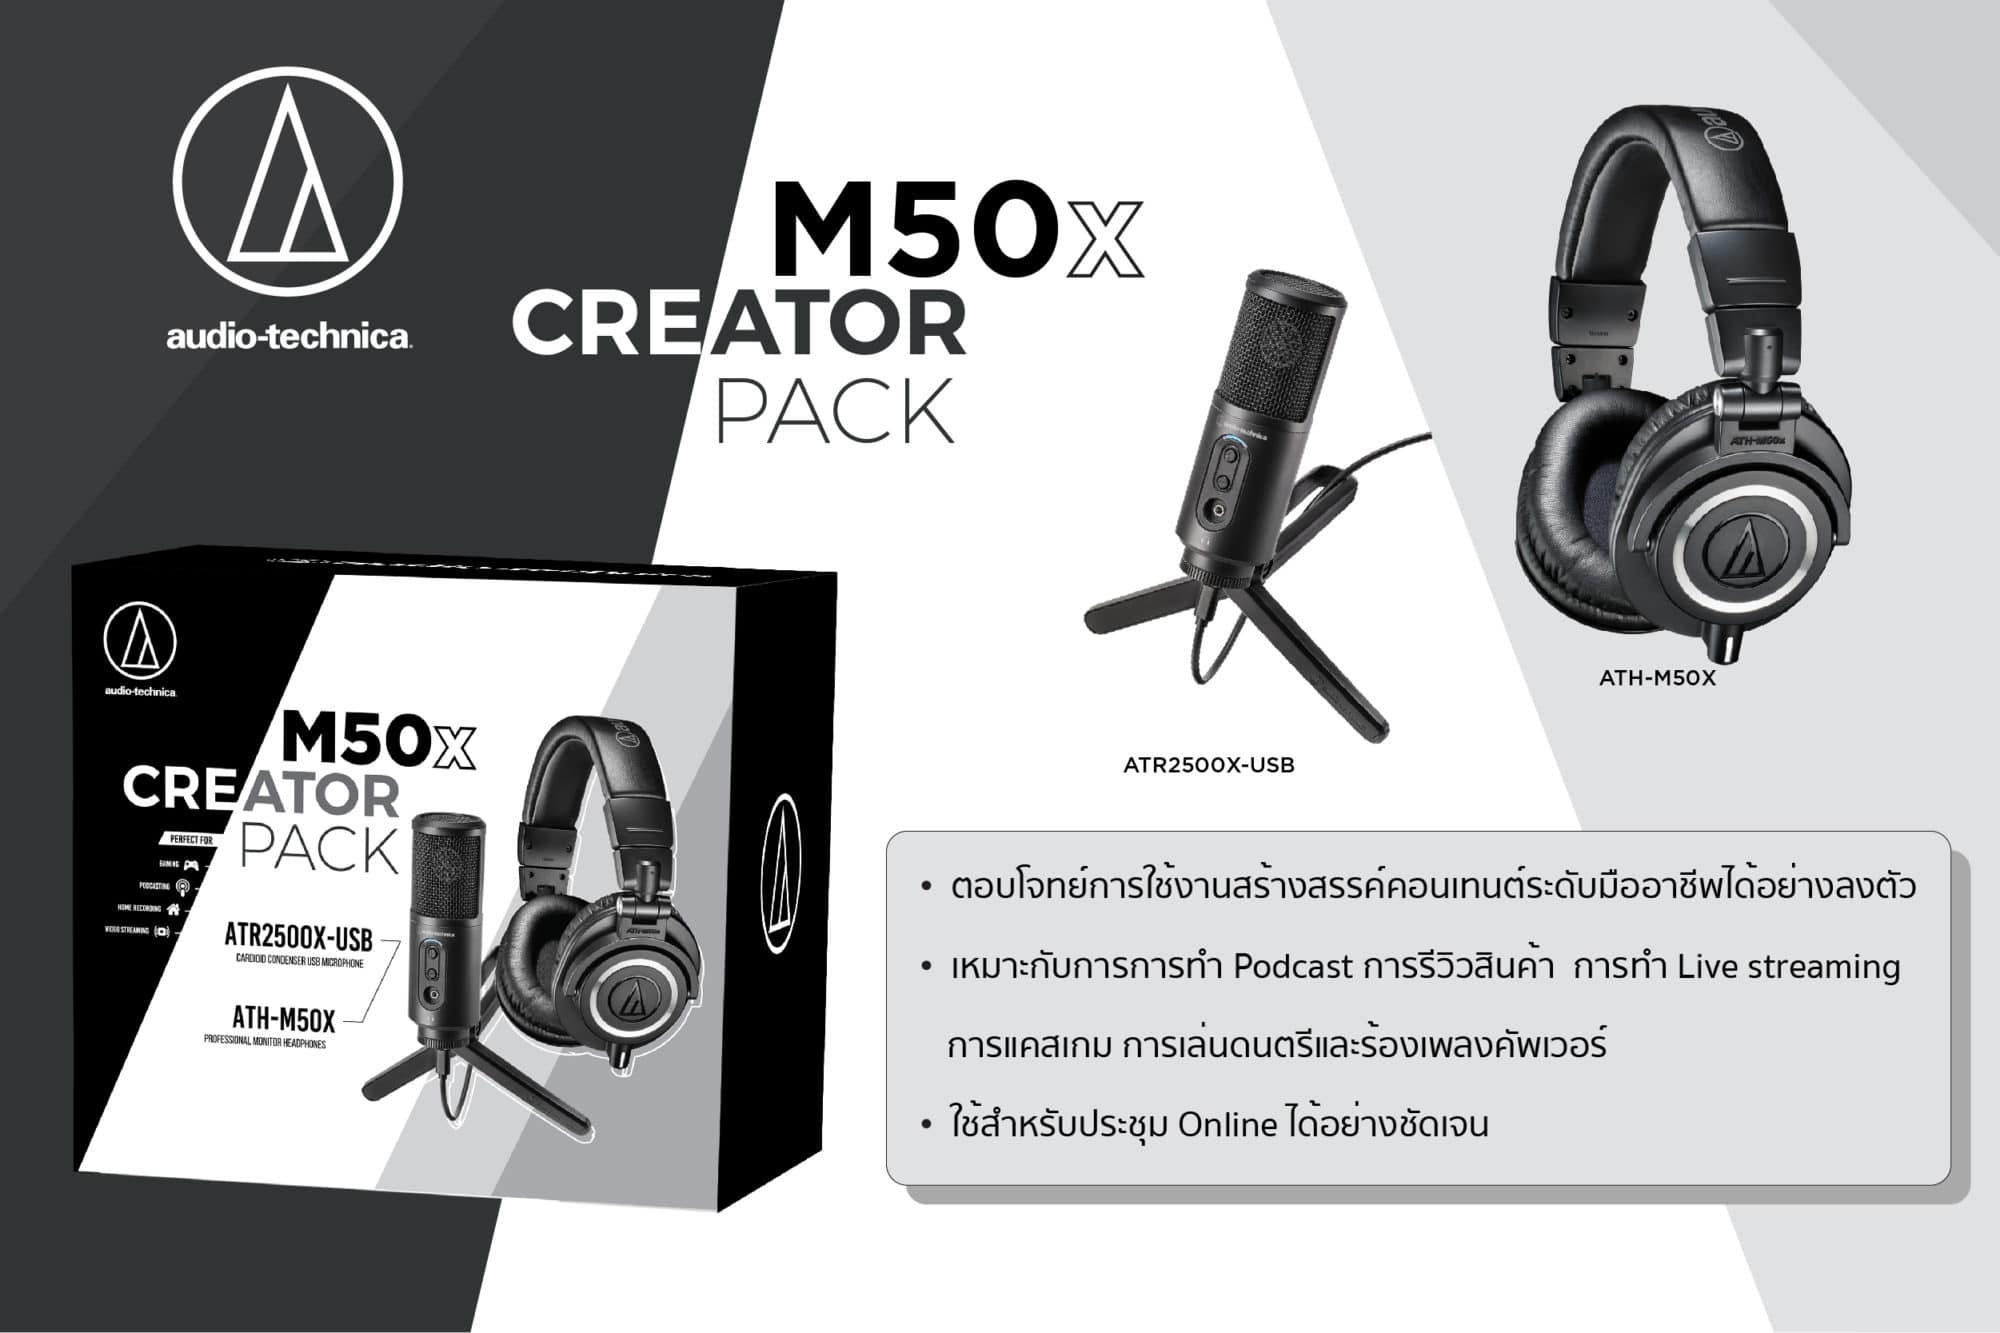 อาร์ทีบีฯ ส่ง M50x Creator Pack พร้อมไมโครโฟน Audio-Technica ATR2500X-USB เอาใจสาย Content Creator 7